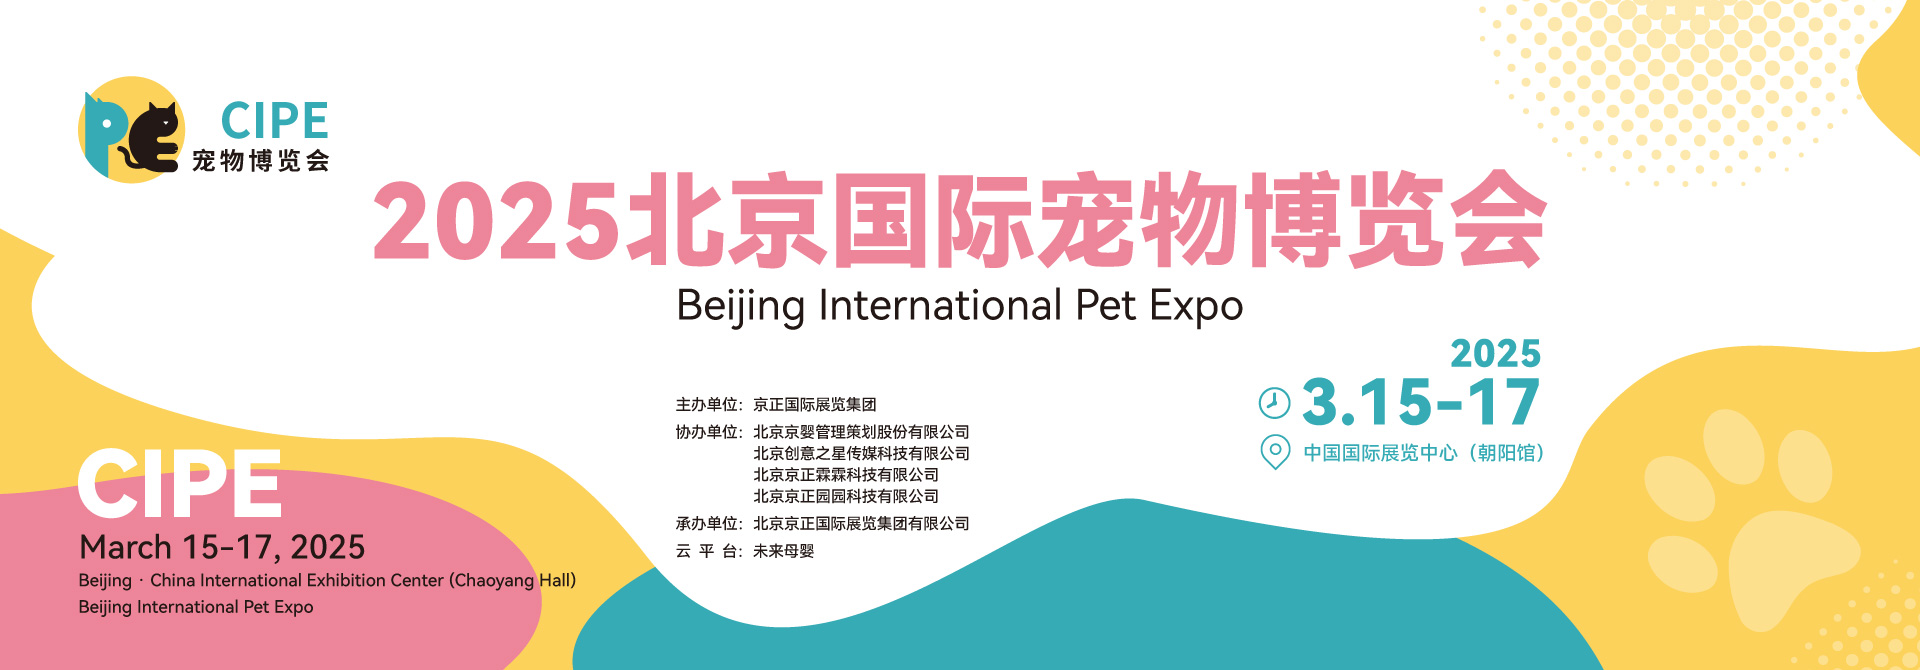 2025北京国际宠物博览会